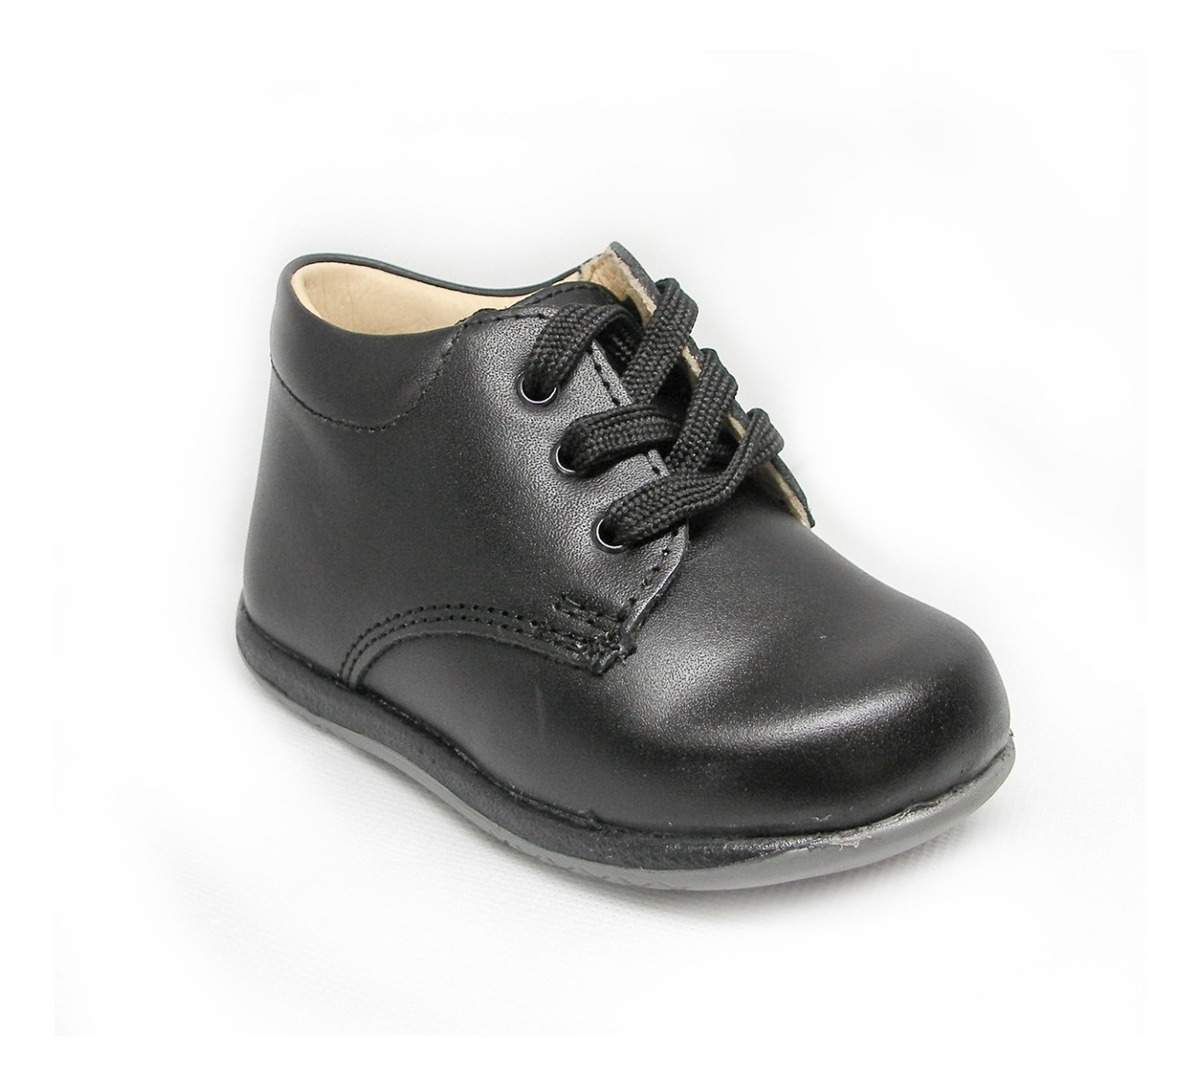 Zapatos Para Nino Marca Kinder Negro 12 Al 14 Piel Mod 300 S